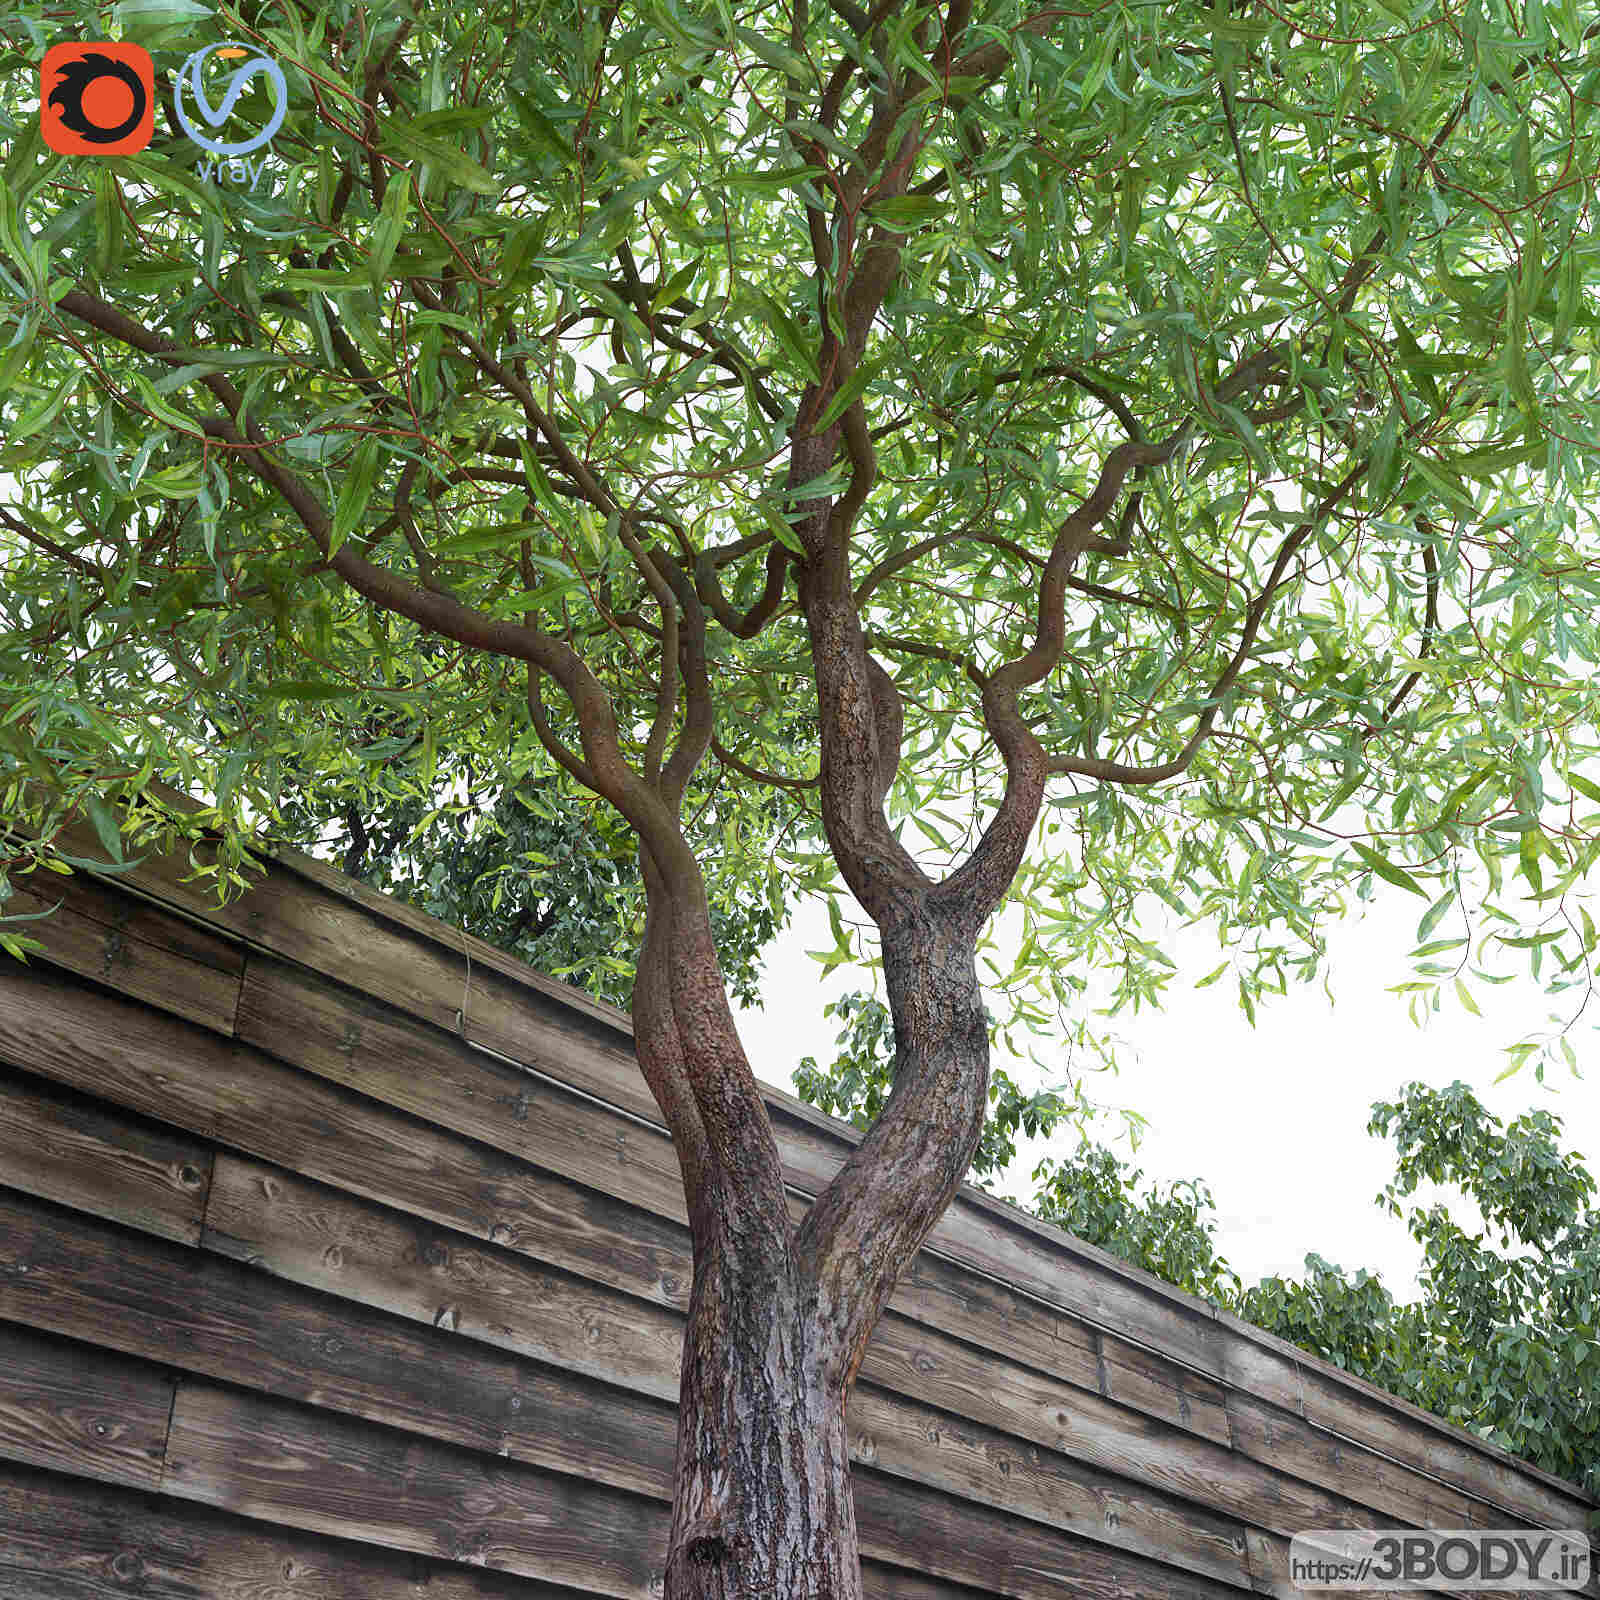 آبجکت سه بعدی درخت و درختچه عکس 2